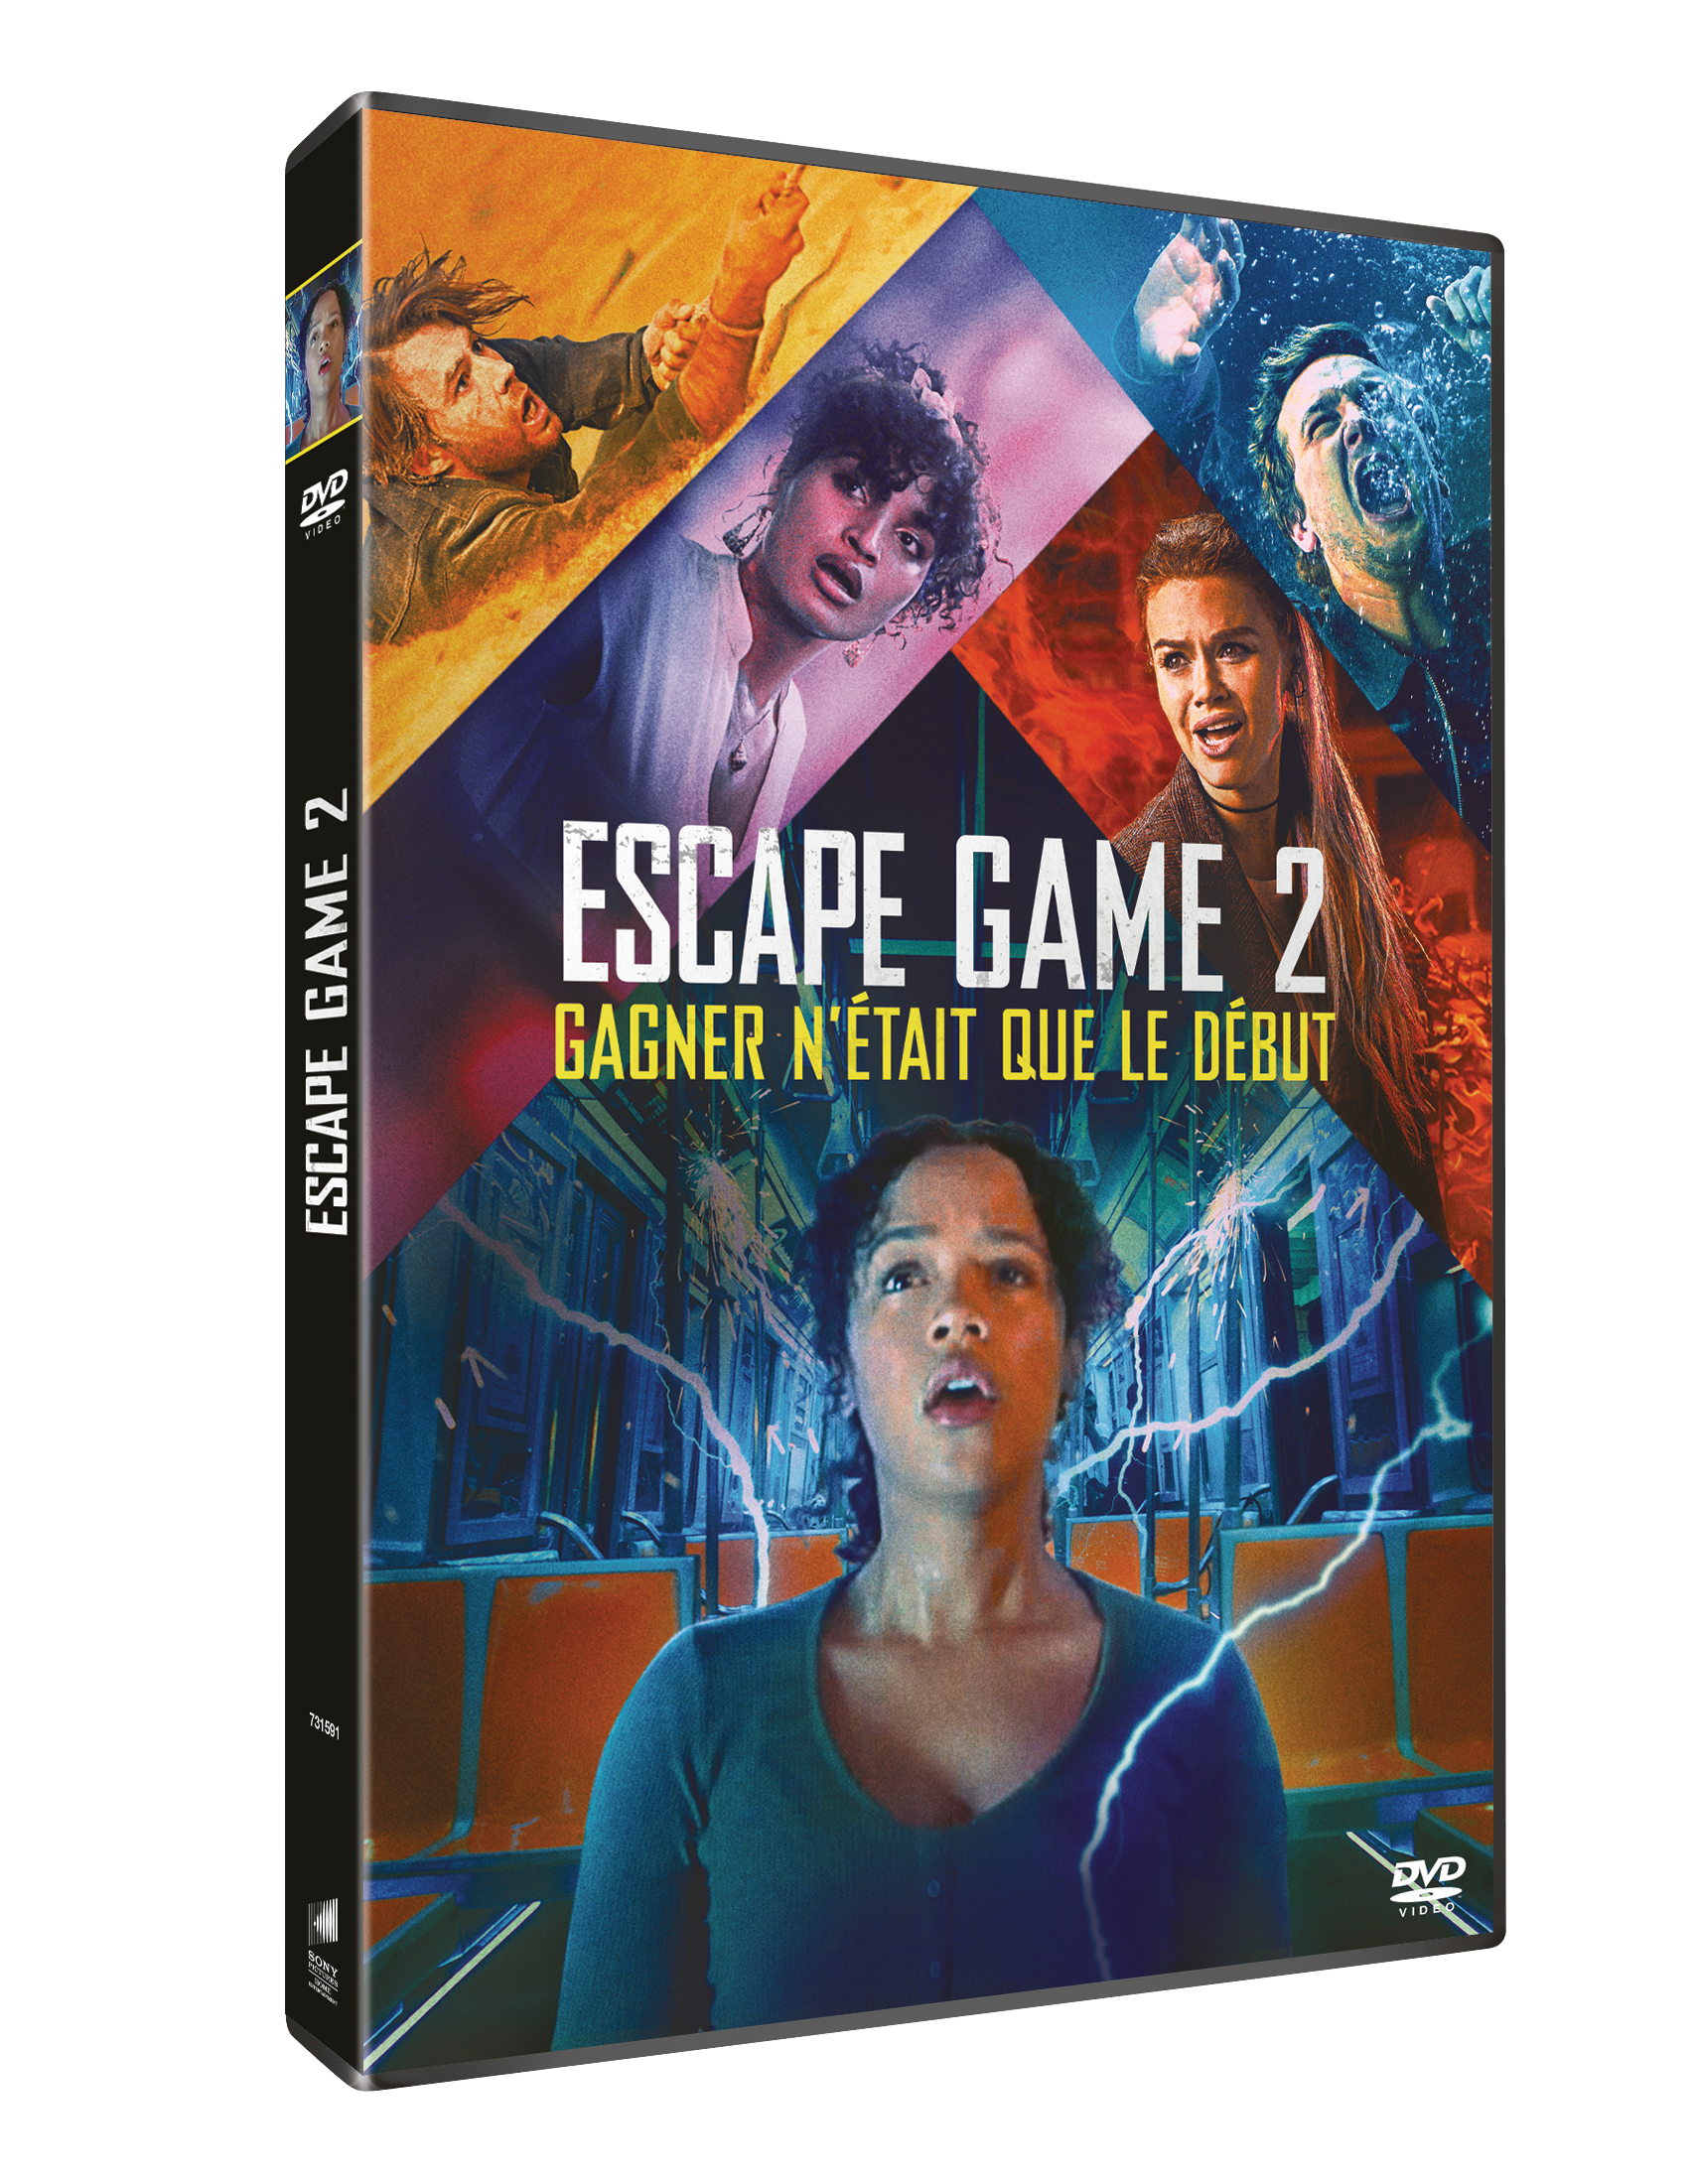 Escape game 2, le monde est un piège